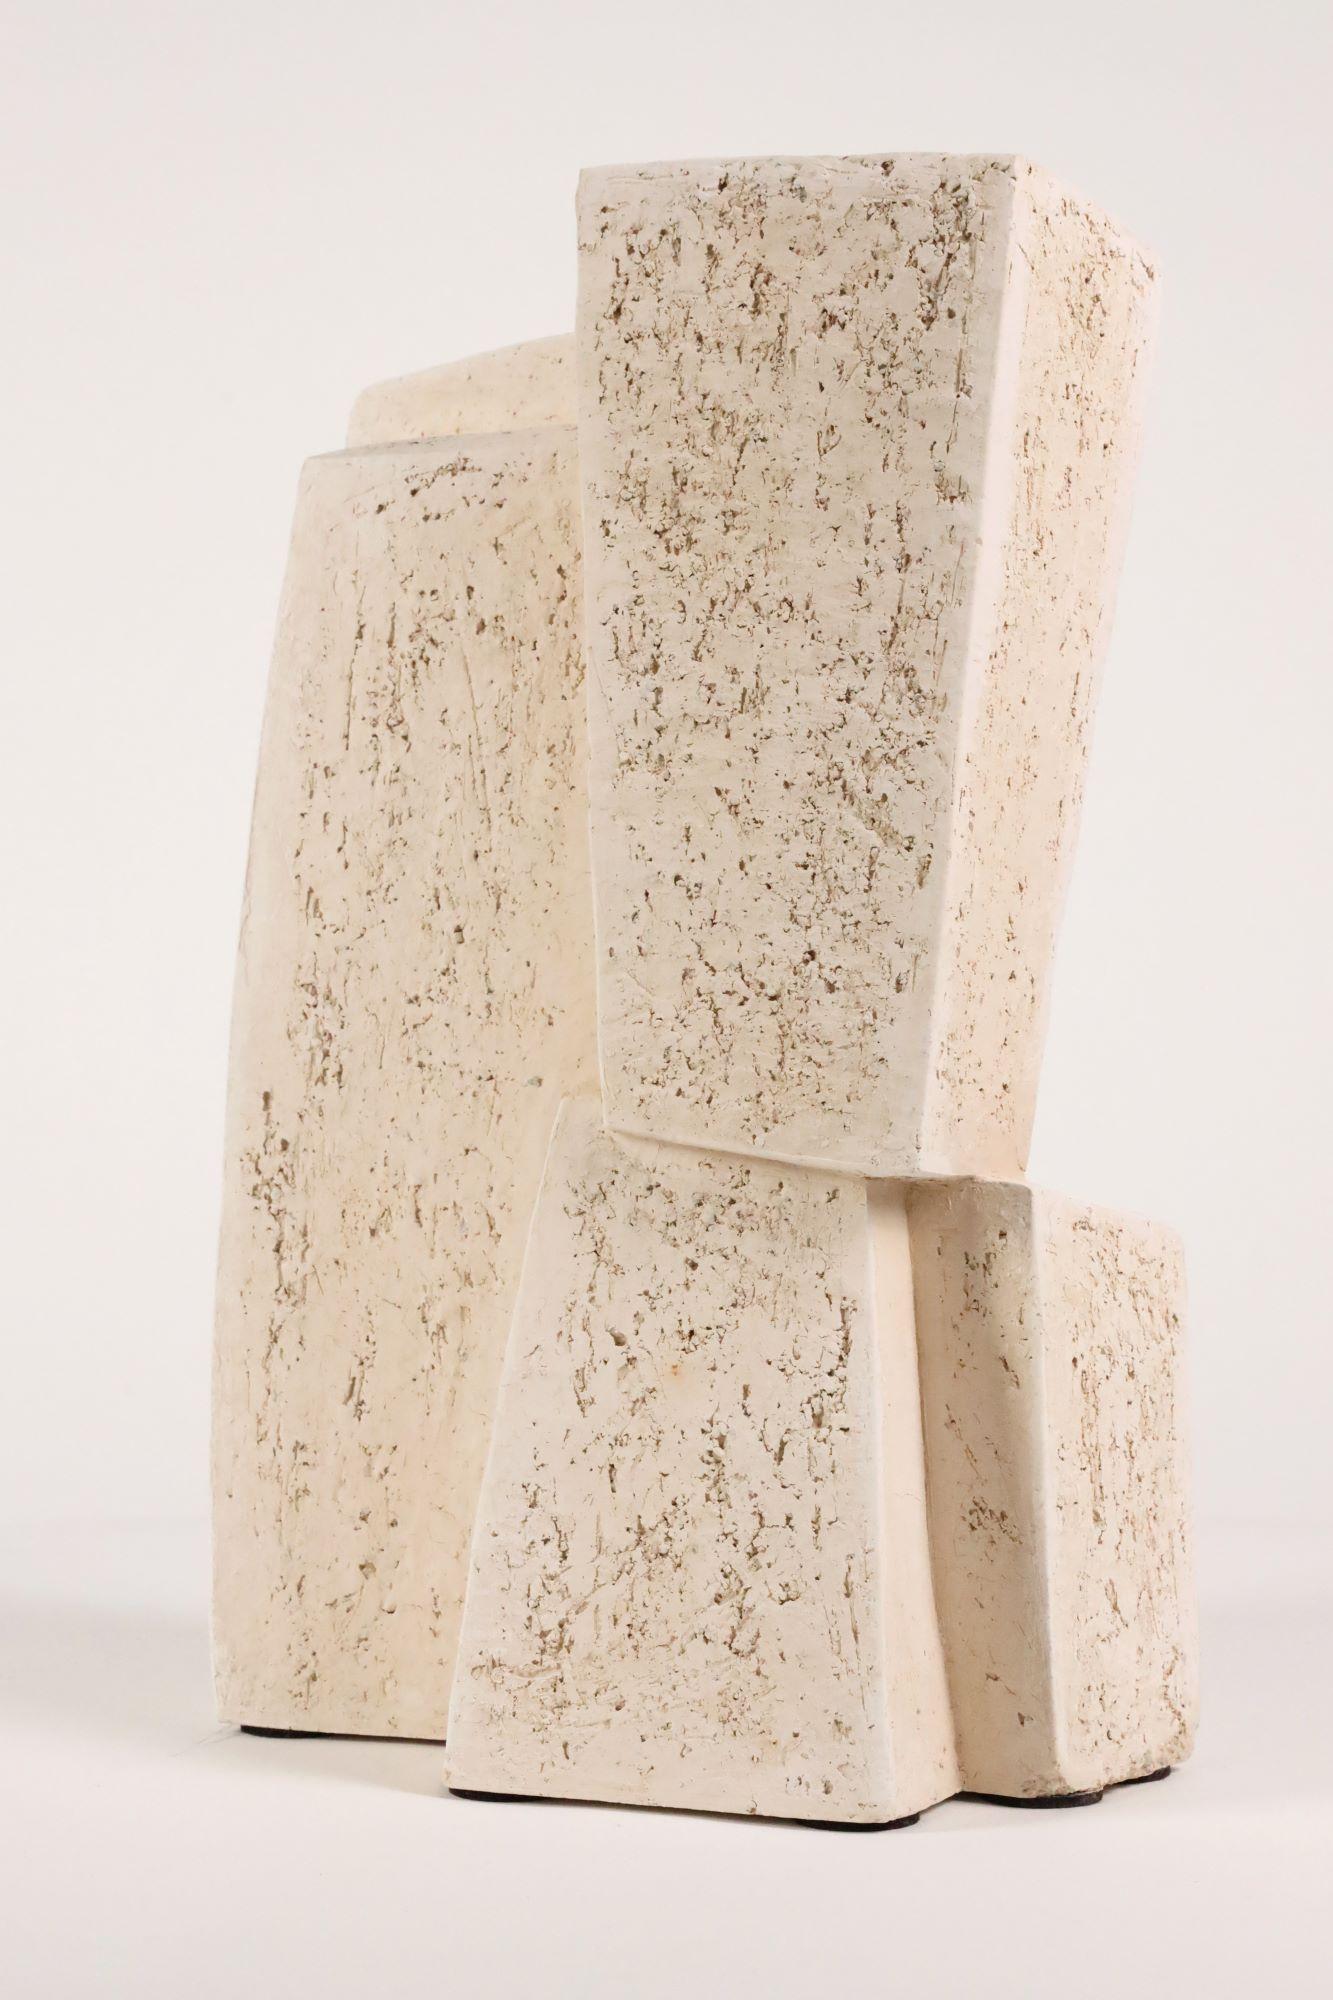 Union V est une sculpture unique en terre cuite blanche avec chamotte de l'artiste contemporaine Delphine Brabant, dont les dimensions sont de 45 × 27 × 19 cm (17.7 × 10.6 × 7.5 in). 
La sculpture est signée et accompagnée d'un certificat